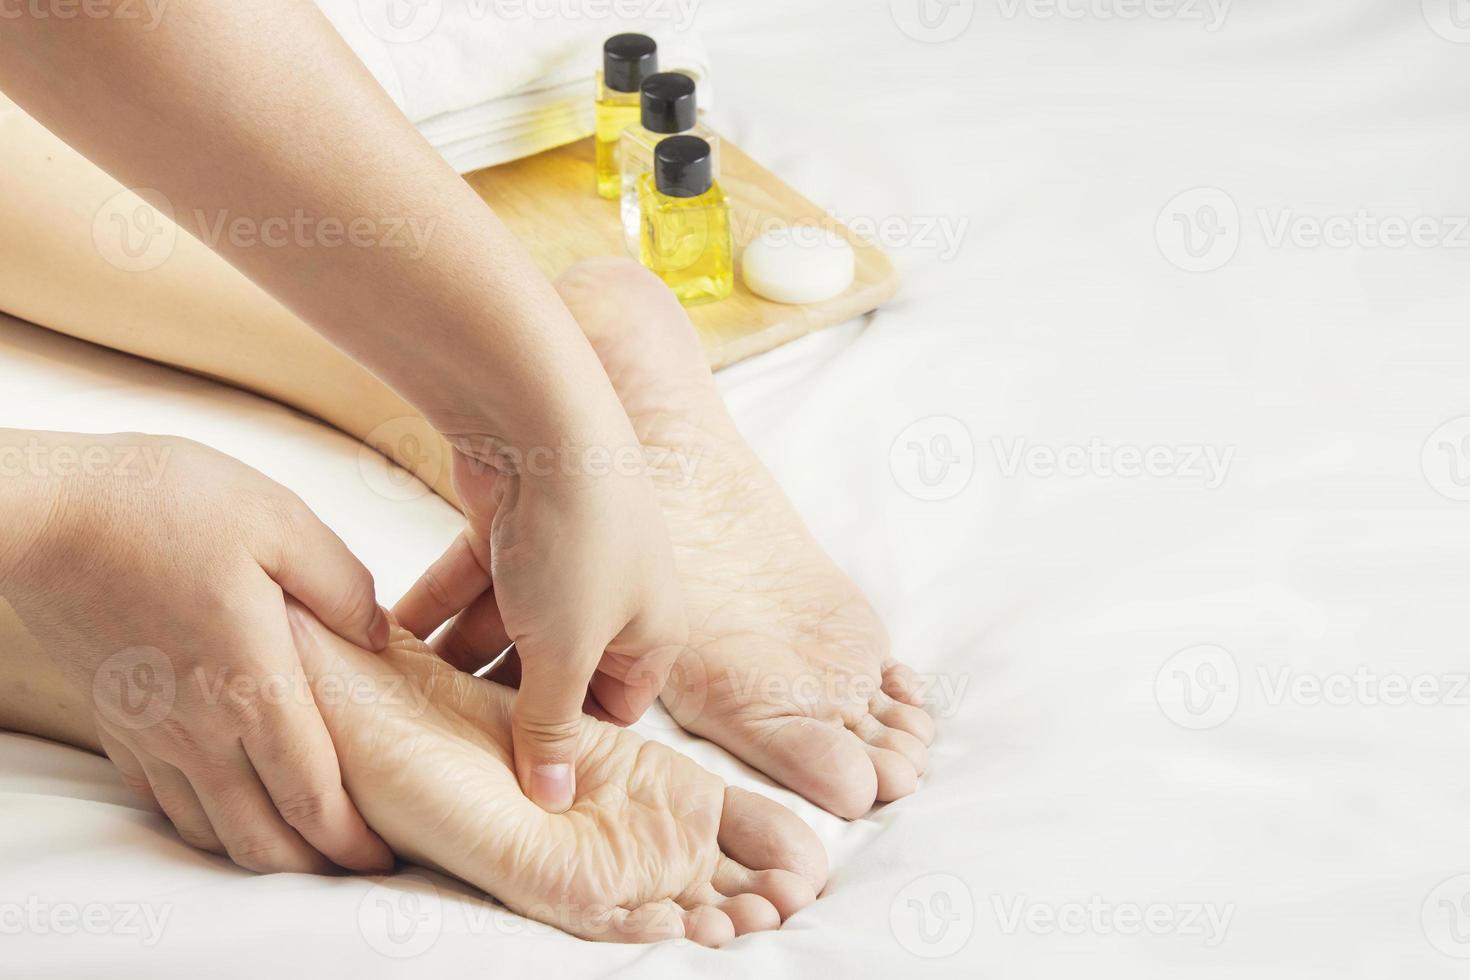 handen van een professioneel voet stimulator met oliën en Gezondheid zorg producten Aan wit bed. concept van Gezondheid zorg, ontspanning, voet spa behandeling. of Product invoering voor vrouwen voet spa foto